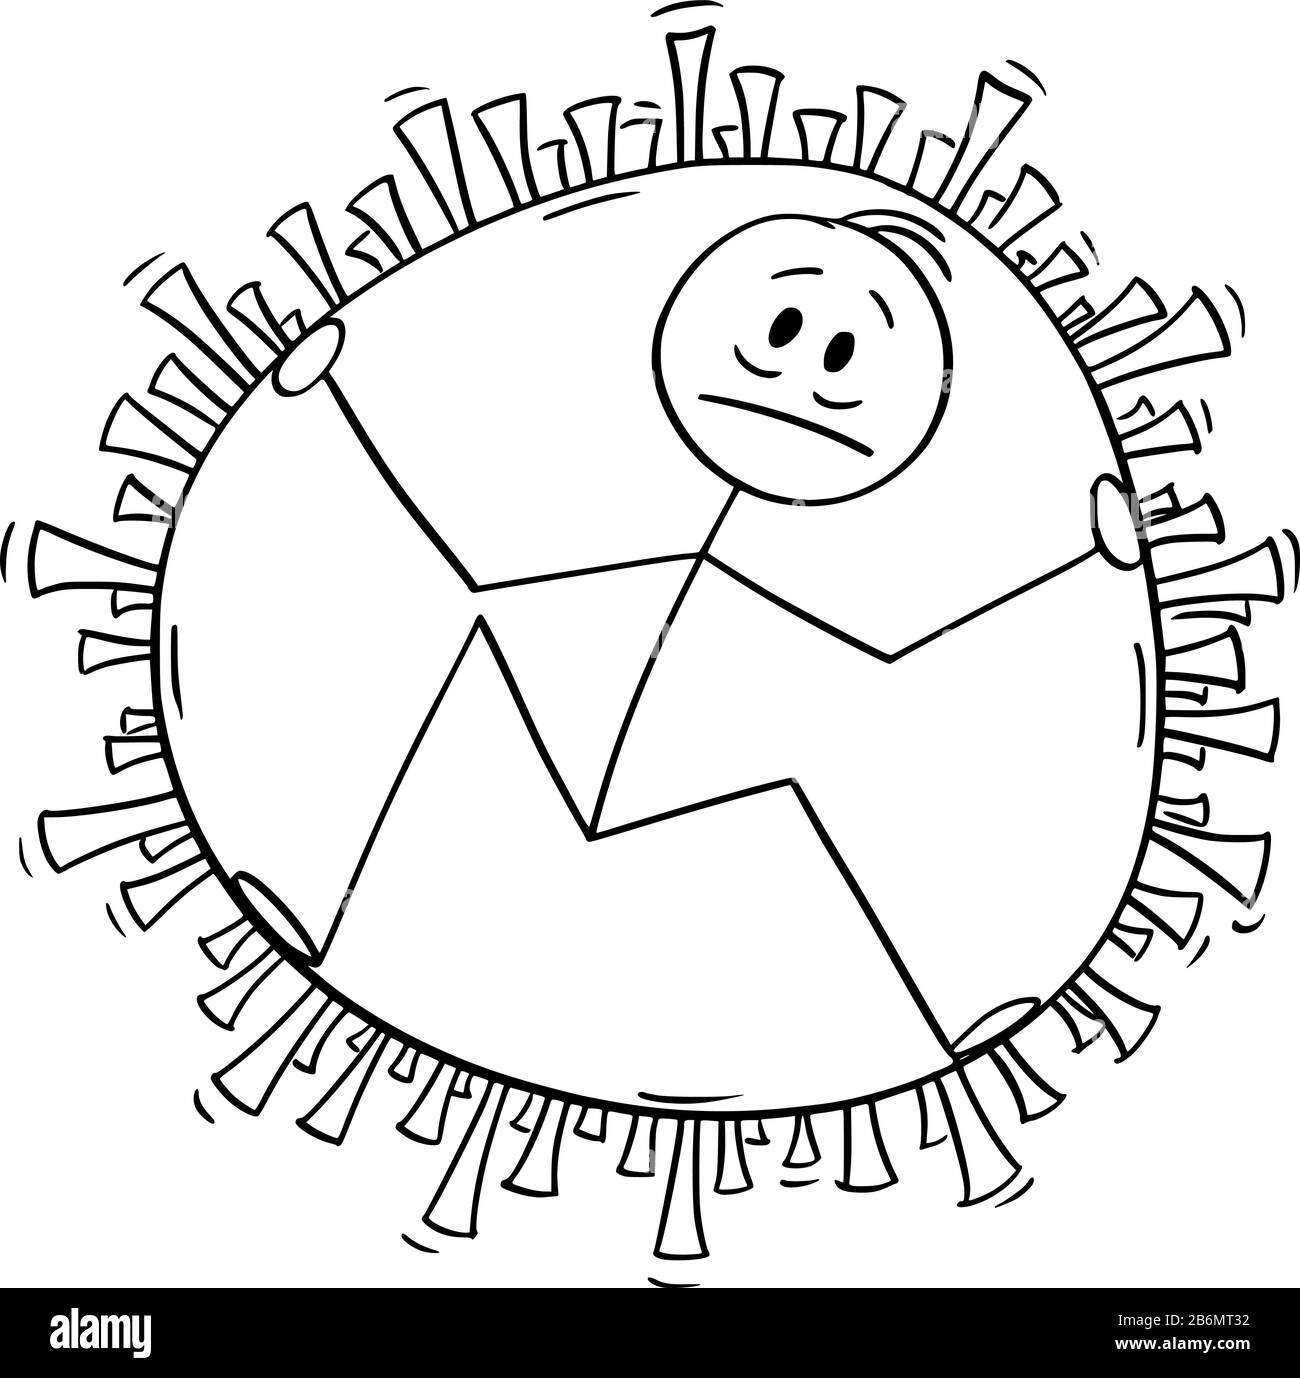 Vektor-Zeichentrickstock-Figur mit einer konzeptionellen Abbildung des kranken Mannes, der im Inneren des Coronavirus Kovid 19 gefangen ist. Infektions-, Epidemie- oder Pandemiekonzept. Stock Vektor